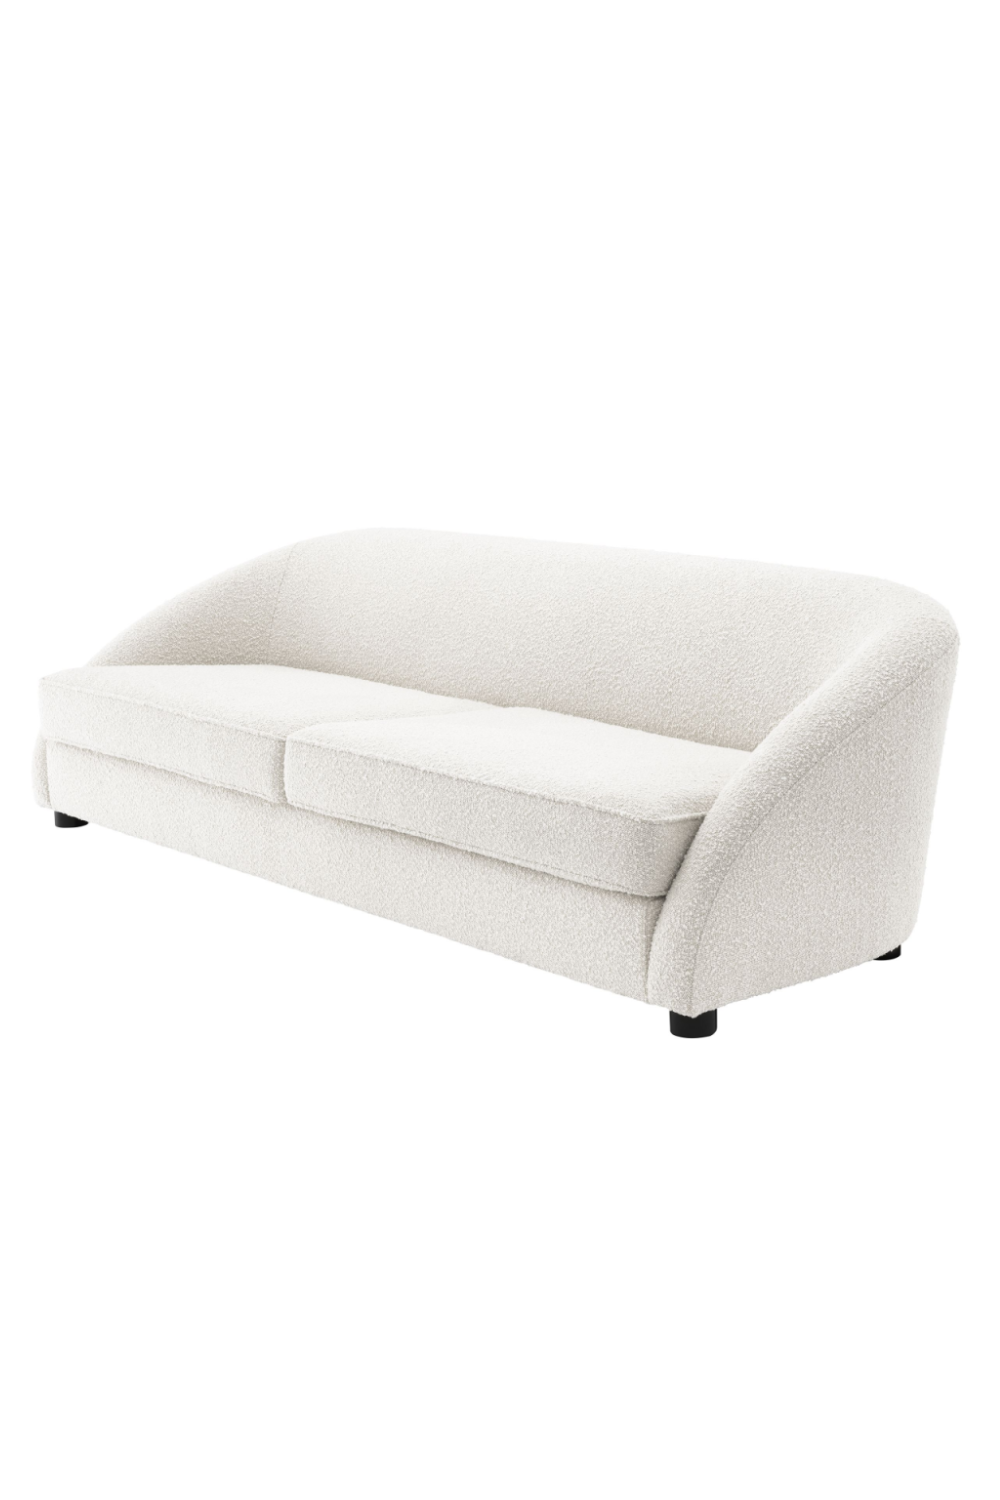 Sloped Arm Modern Sofa | Eichholtz Cruz | Oroa.com